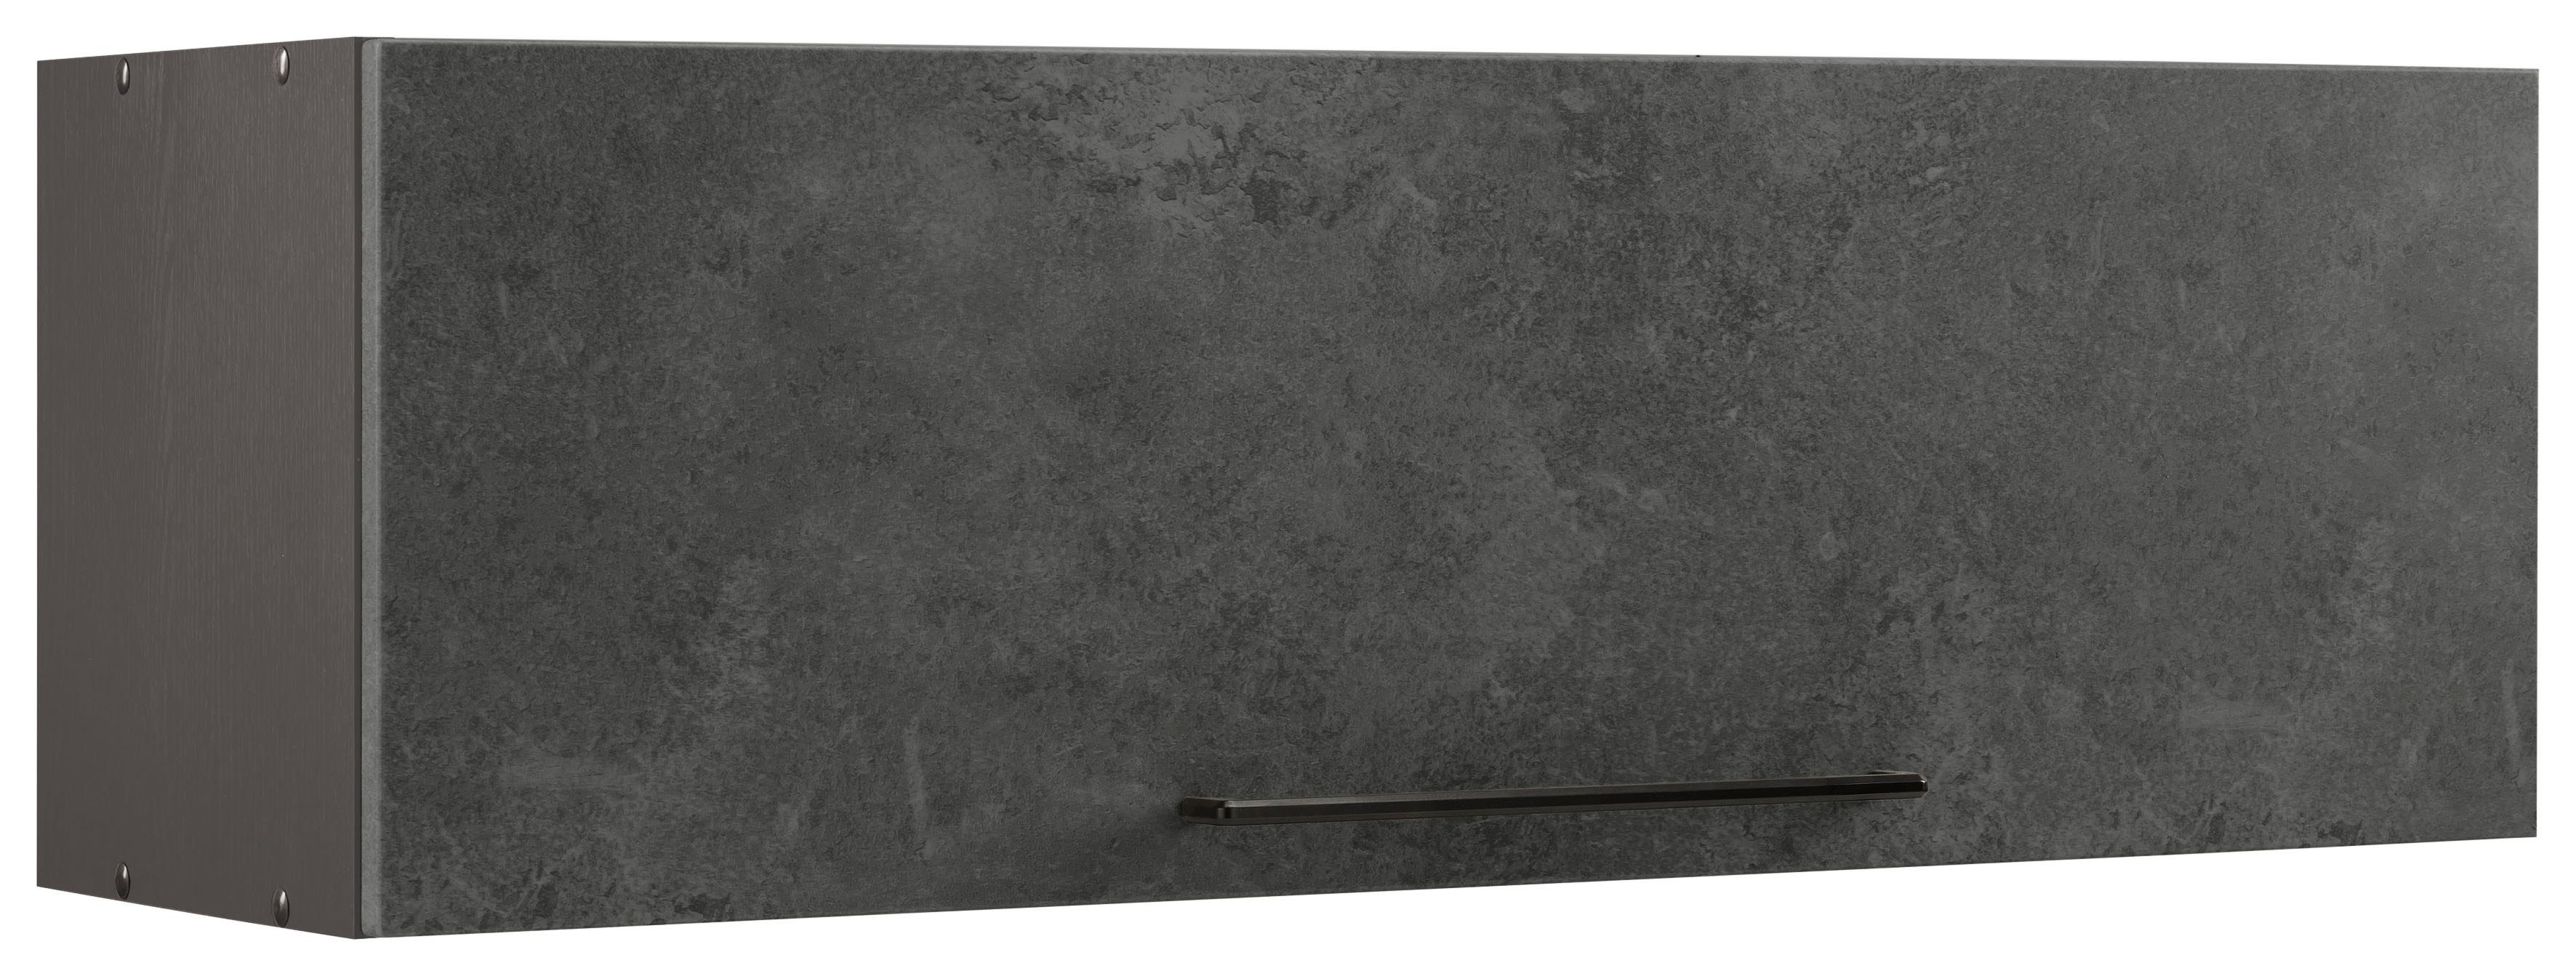 HELD MÖBEL Klapphängeschrank Tulsa 100 cm breit, mit 1 Klappe, schwarzer Metallgriff, MDF Front betonfarben dunkel | grafit | Hängeschränke